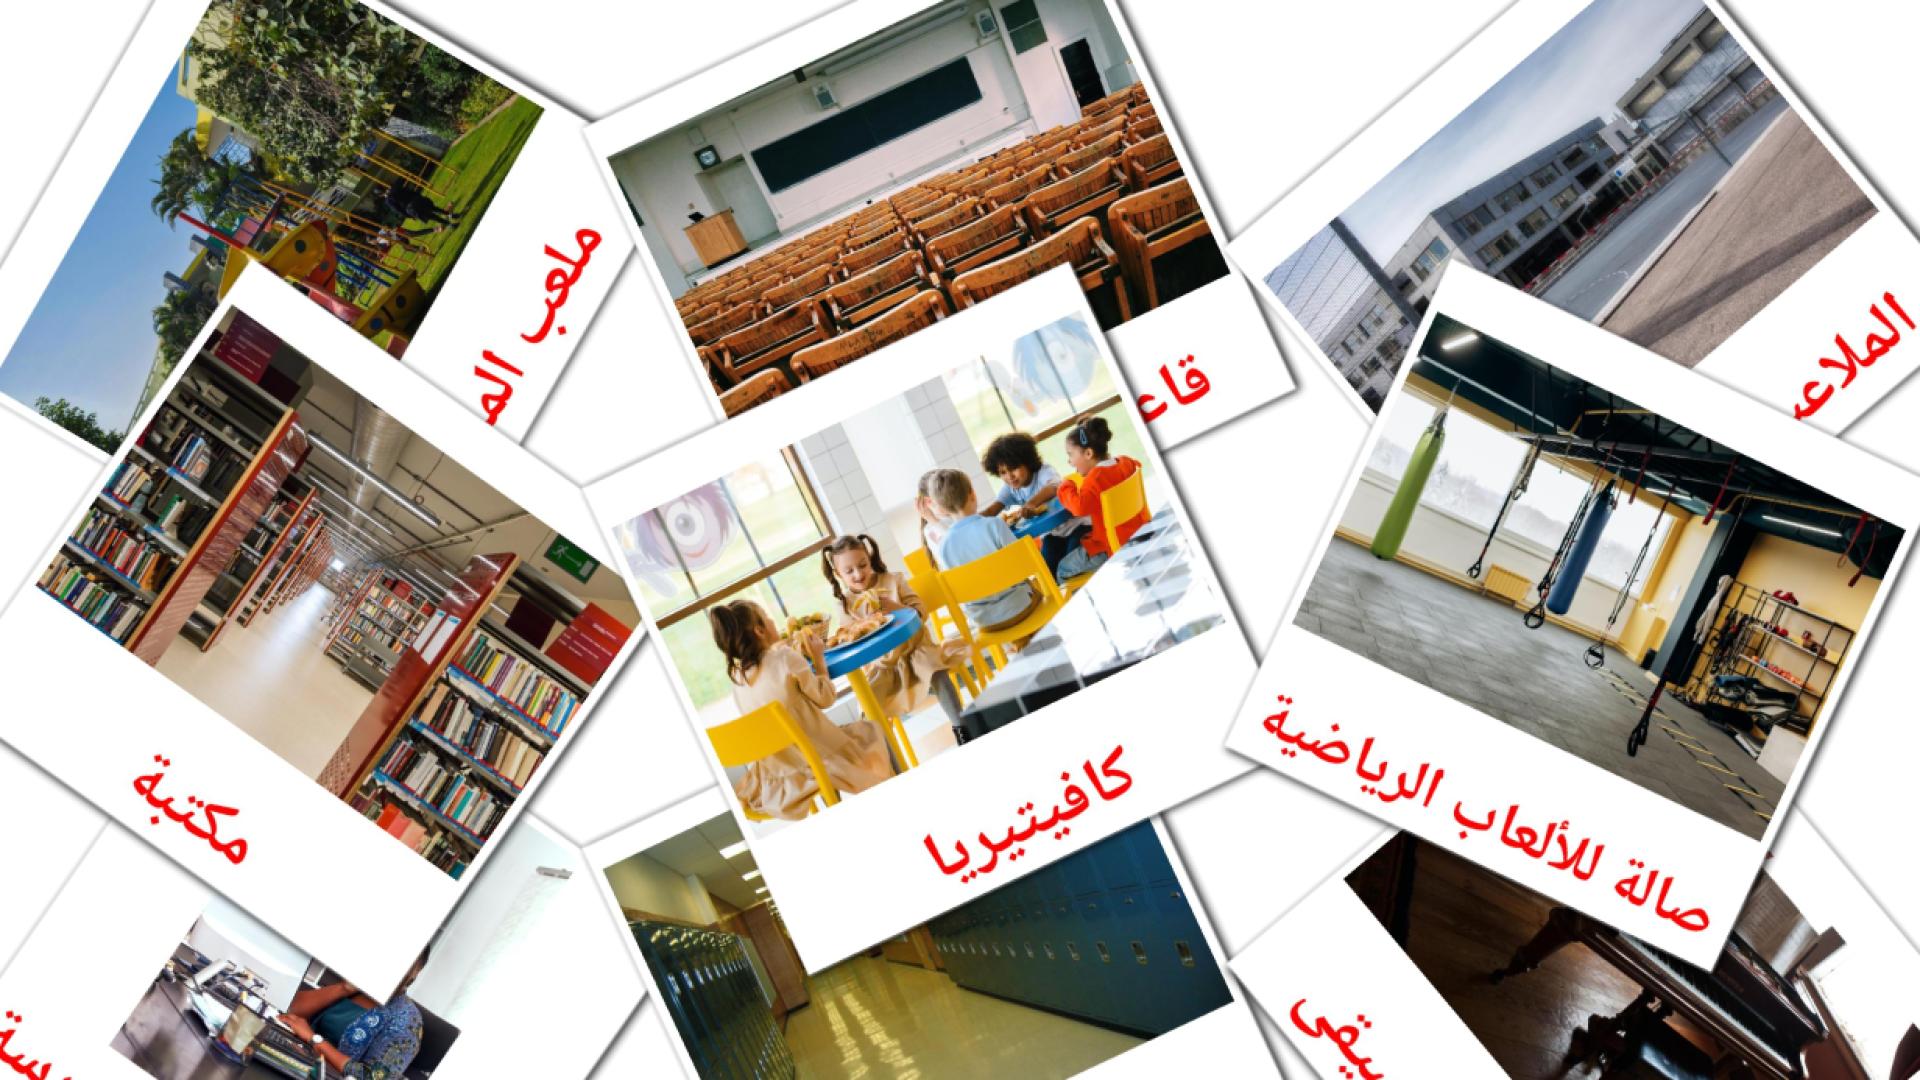 Edificio escolar - tarjetas de vocabulario en árabe